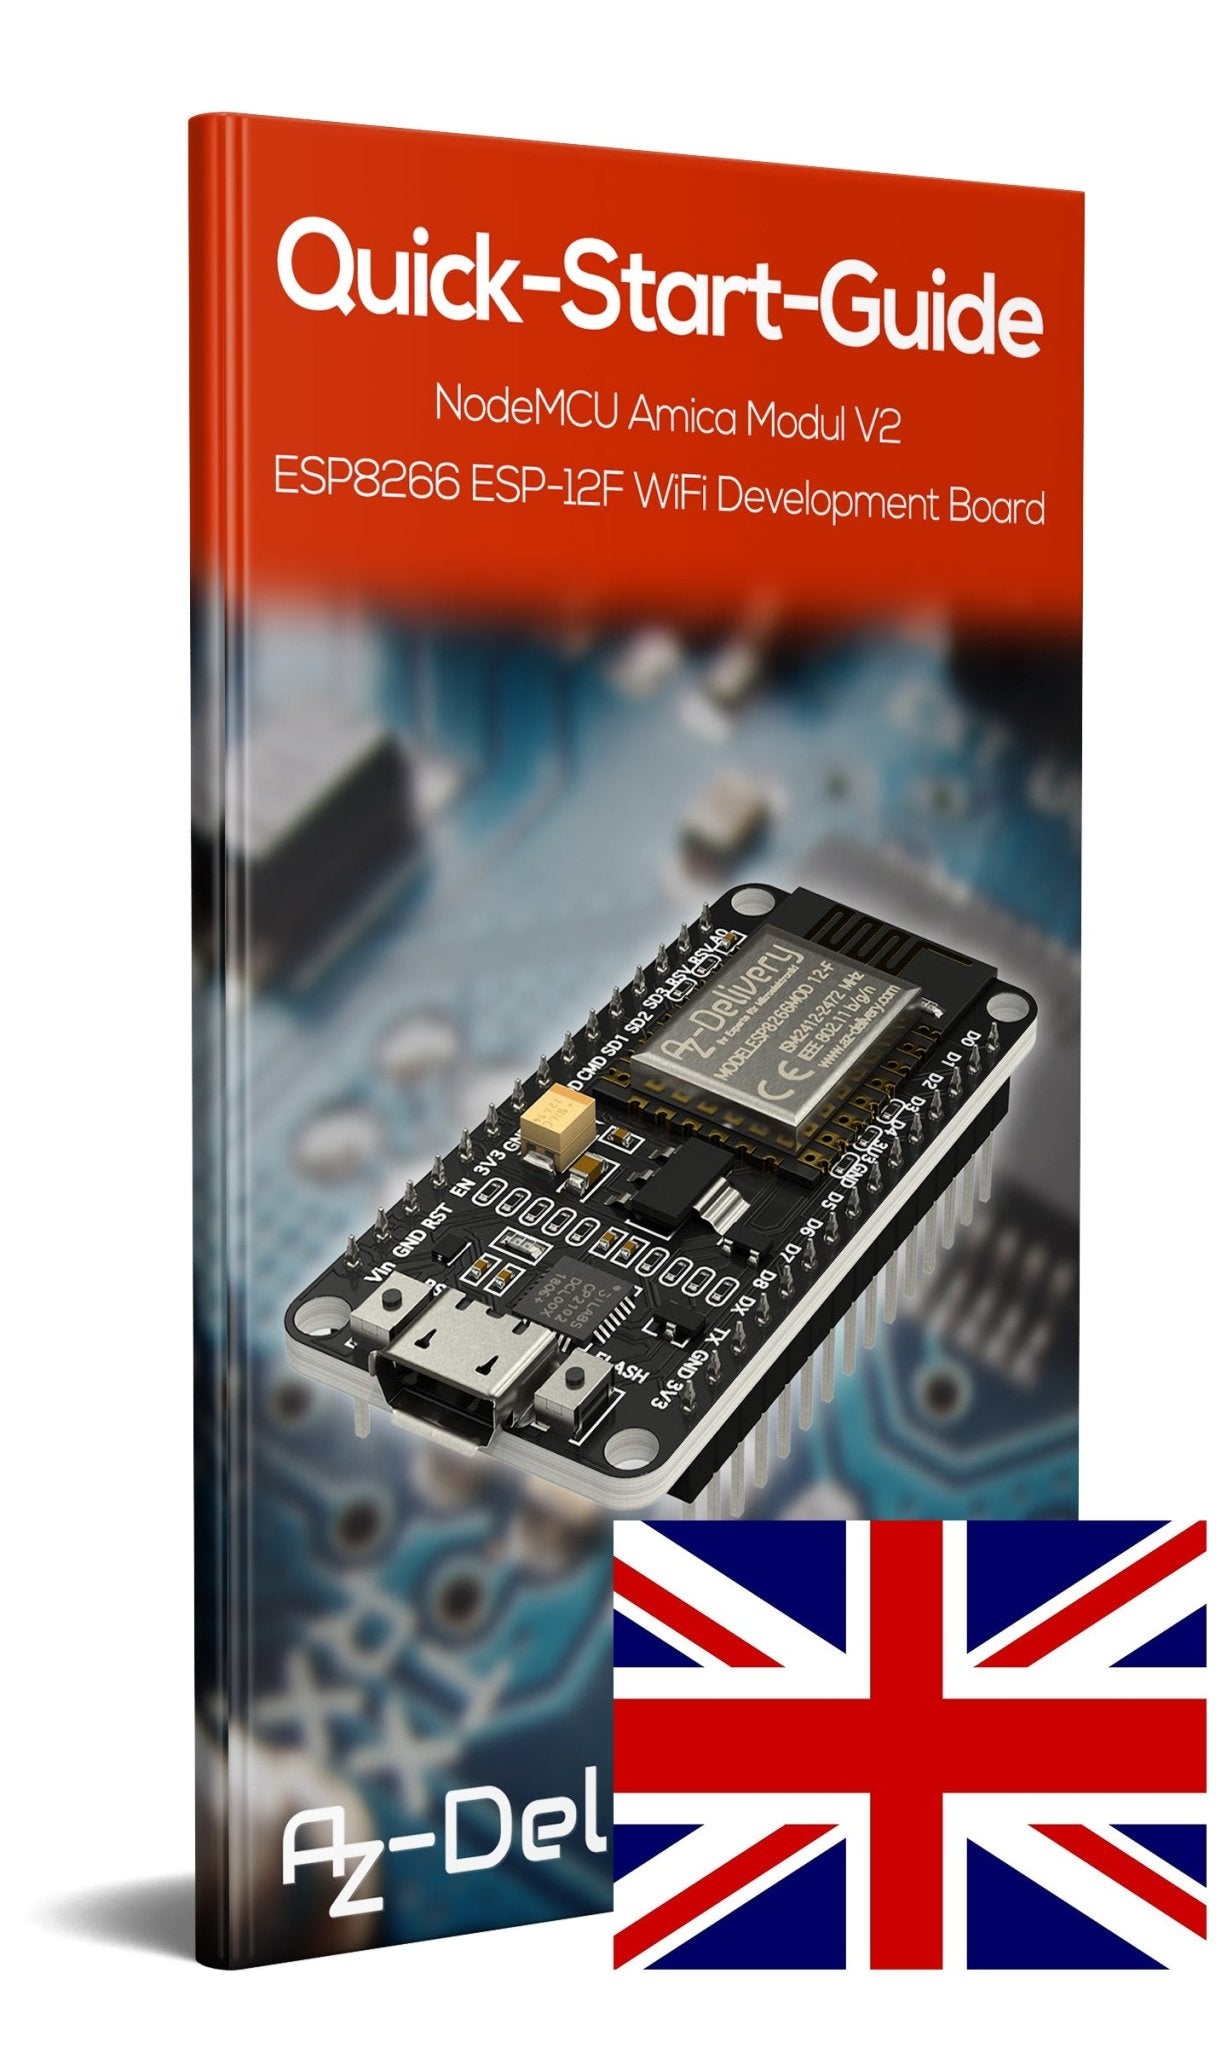 NodeMCU Lua Amica Modul V2 ESP8266 ESP-12F WIFI Wifi Development Board mit CP2102 - AZ-Delivery